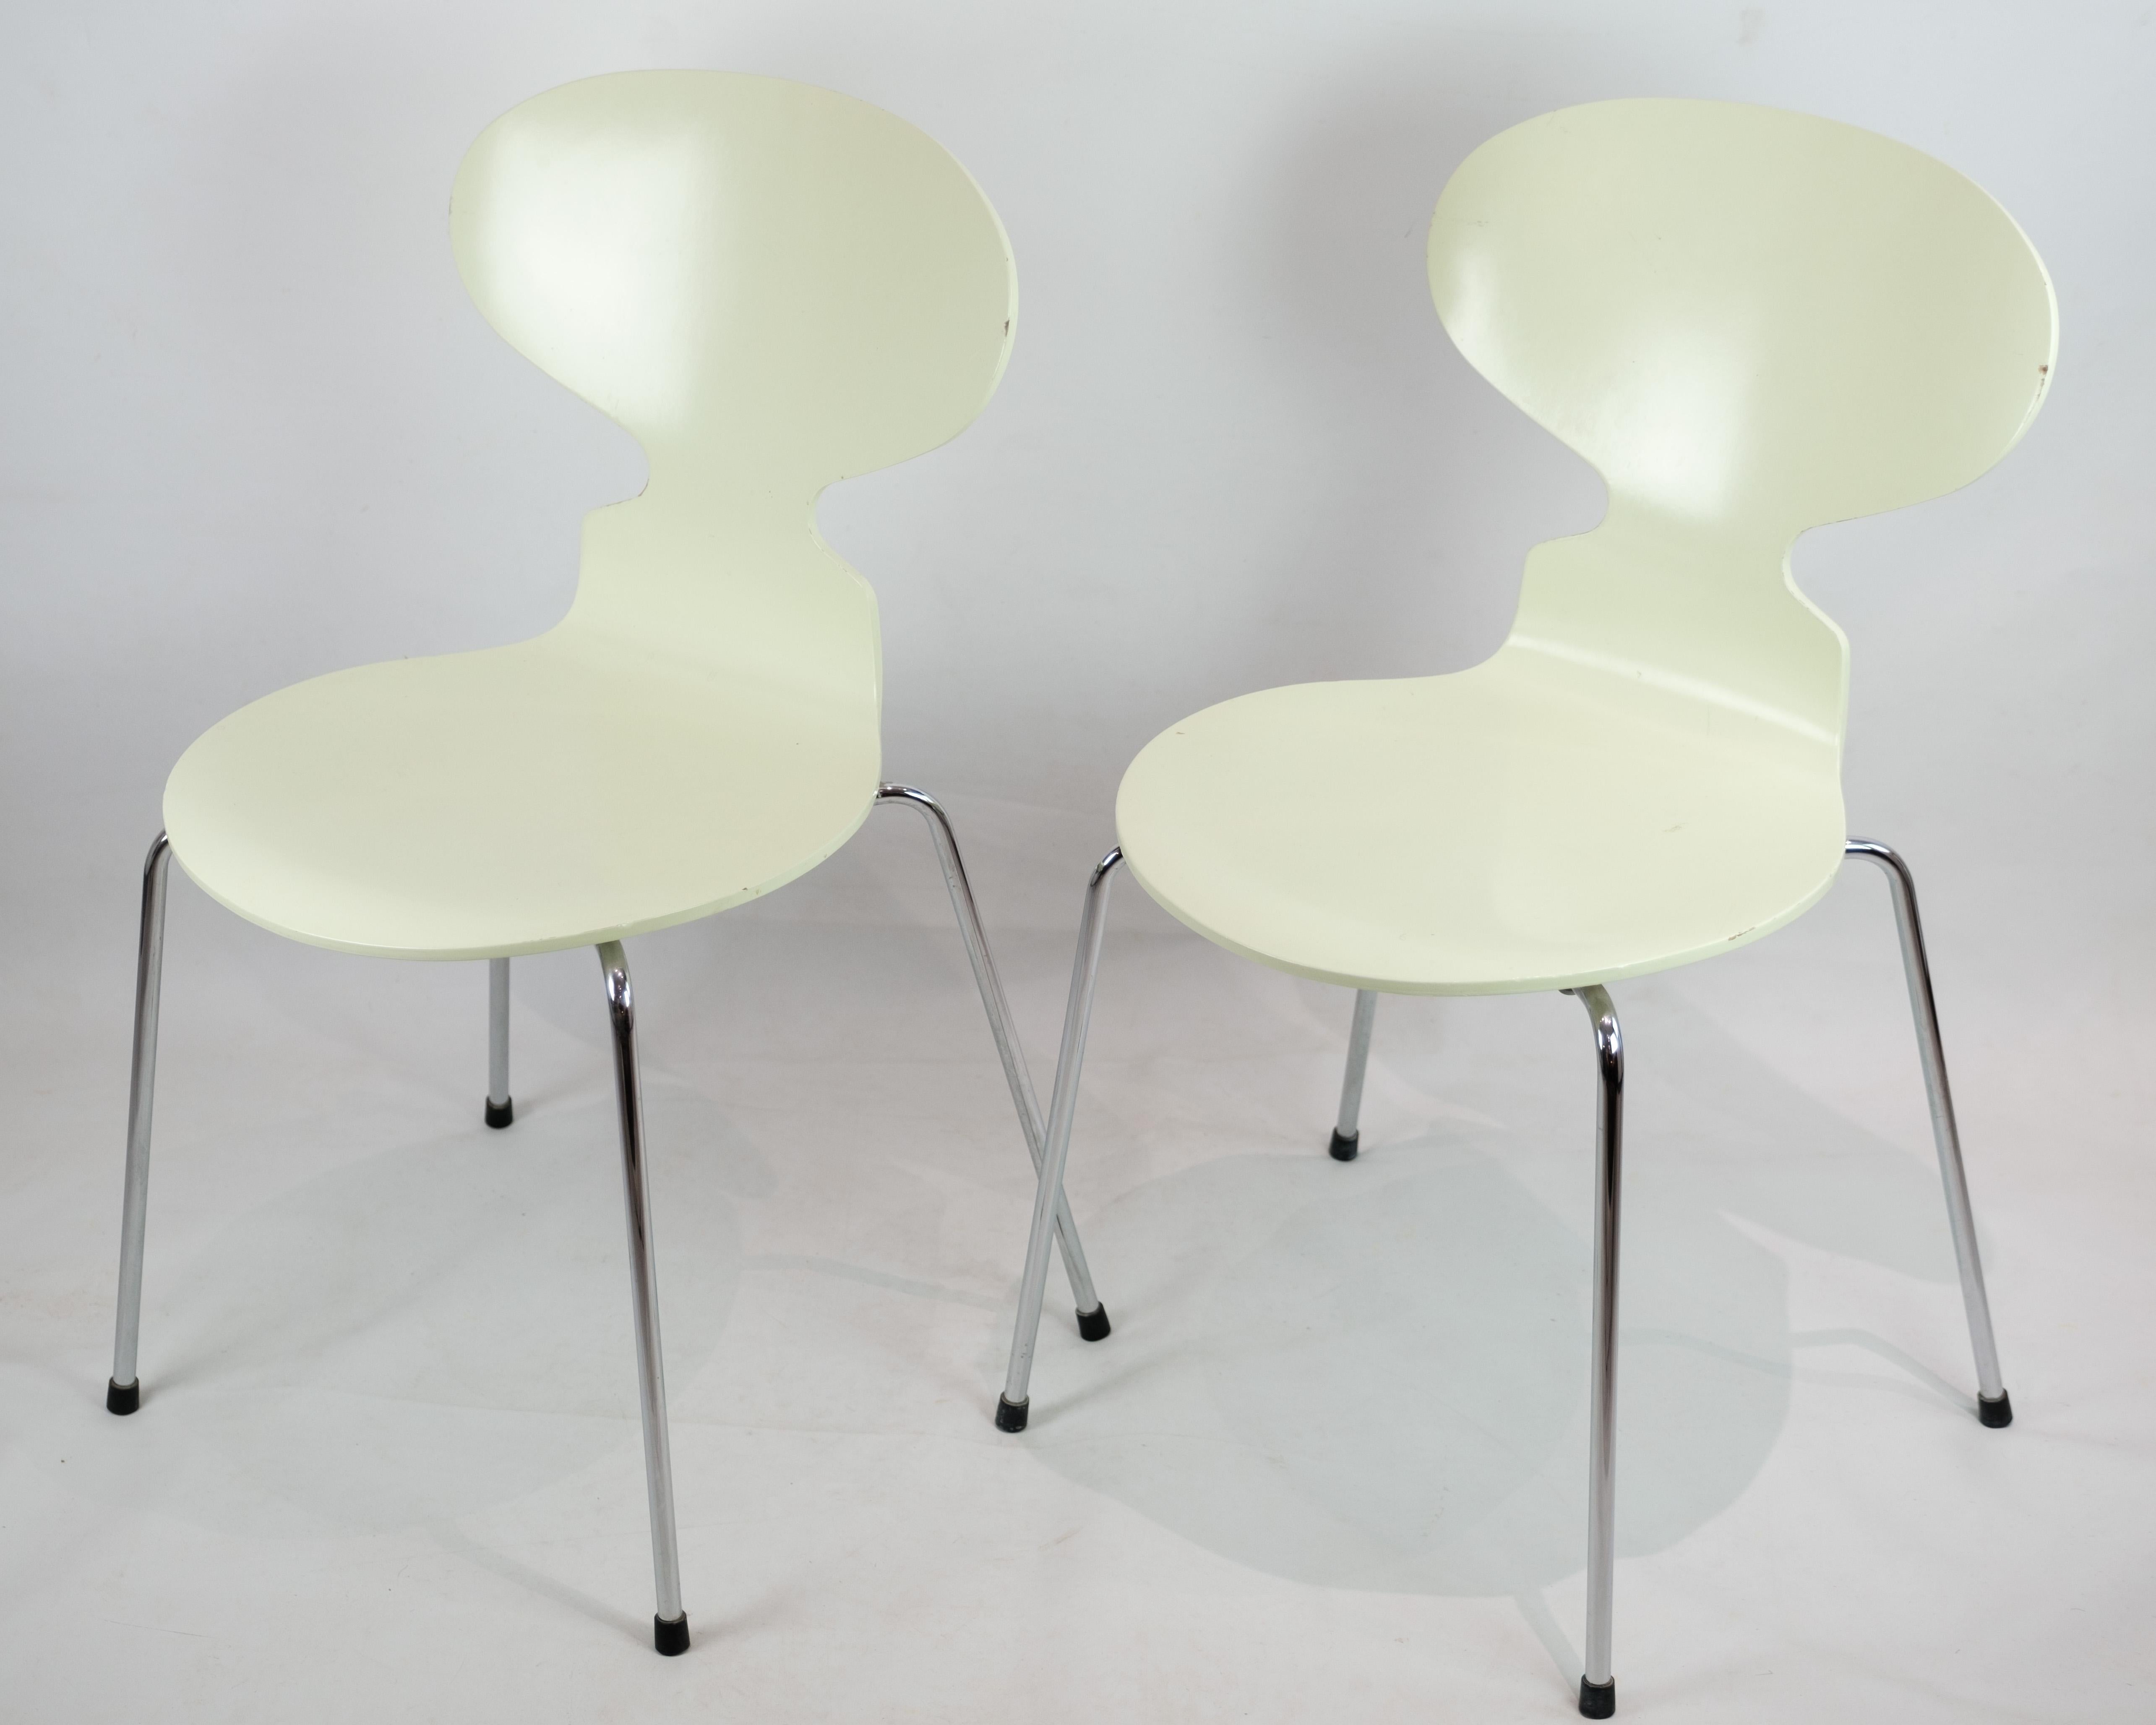 Ce set original de deux chaises Ant, modèle 3101, apporte une touche de charme vintage à n'importe quel espace grâce à leur couleur vert pastel. Conçues par le célèbre Arne Jacobsen et fabriquées par Fritz Hansen dans les années 1970, ces chaises